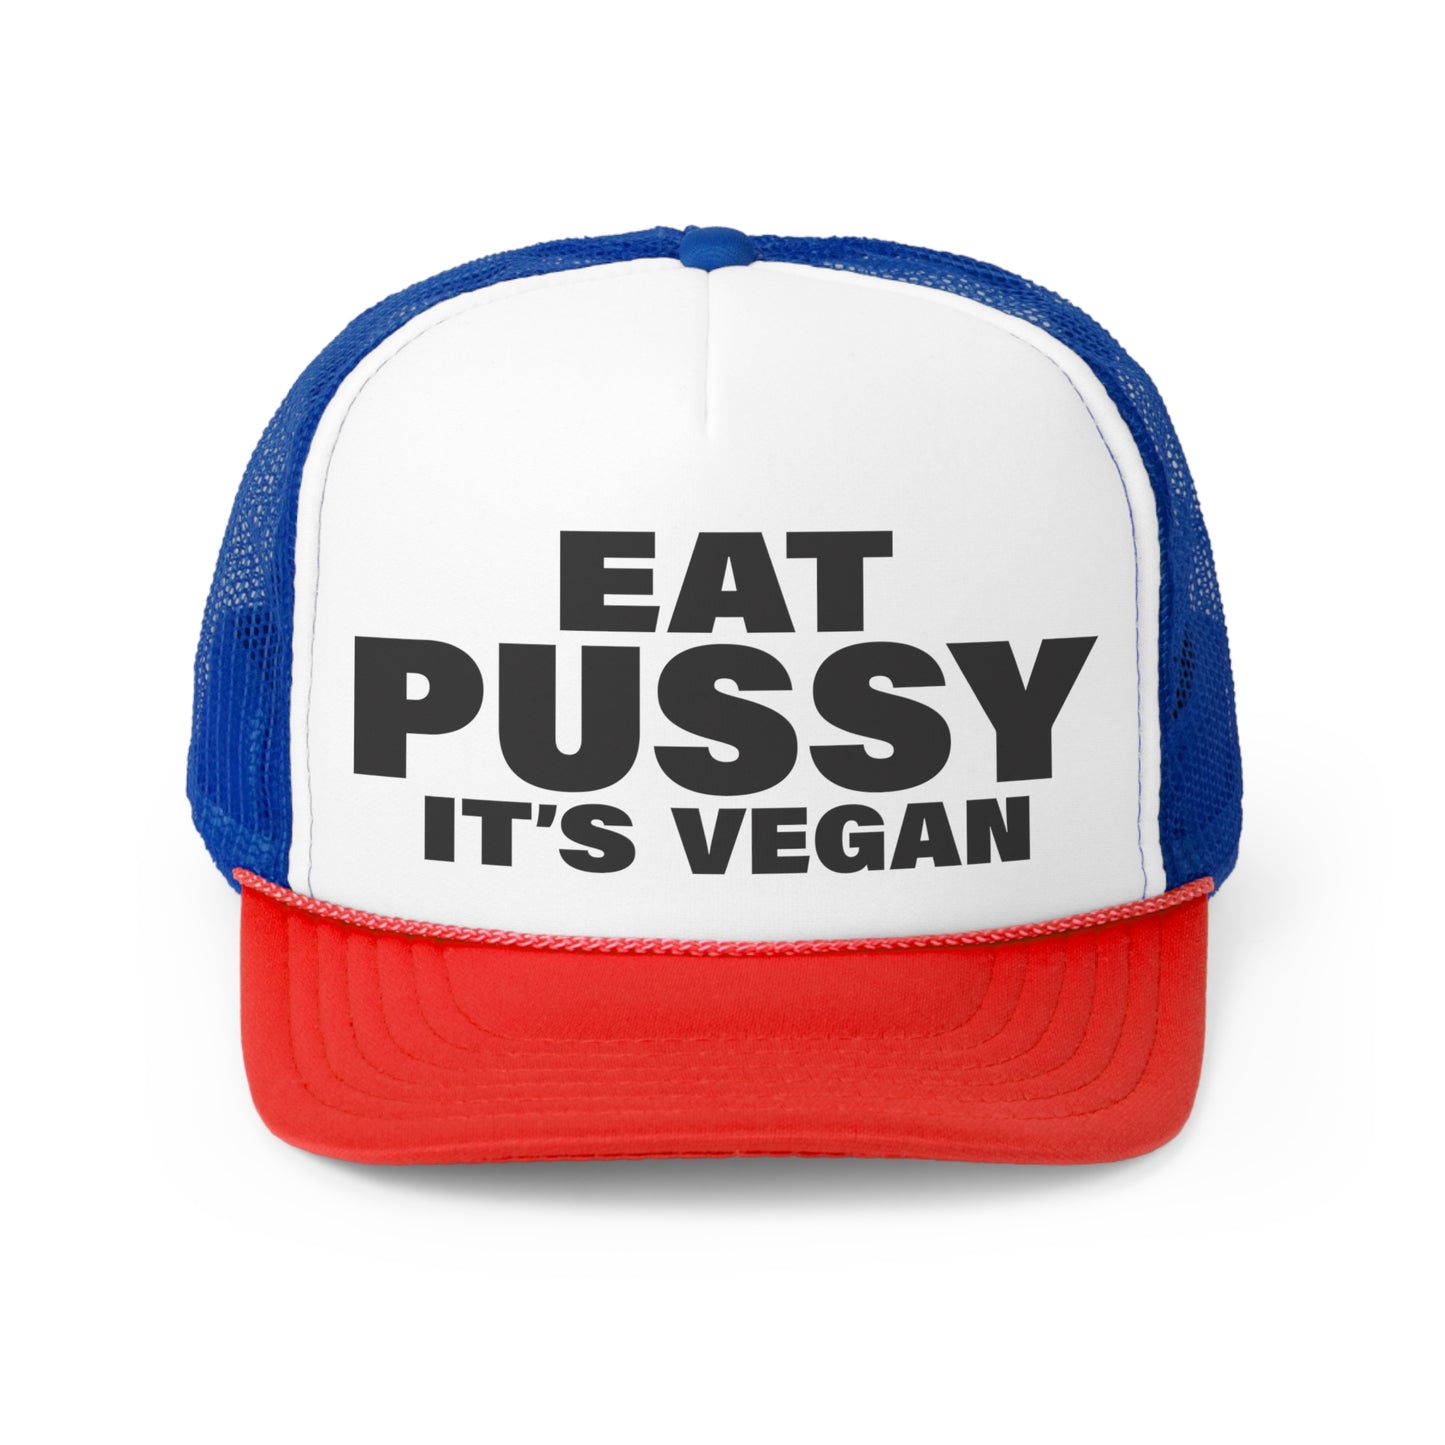 Eat Pu$$y It's Vegan - Trucker Caps